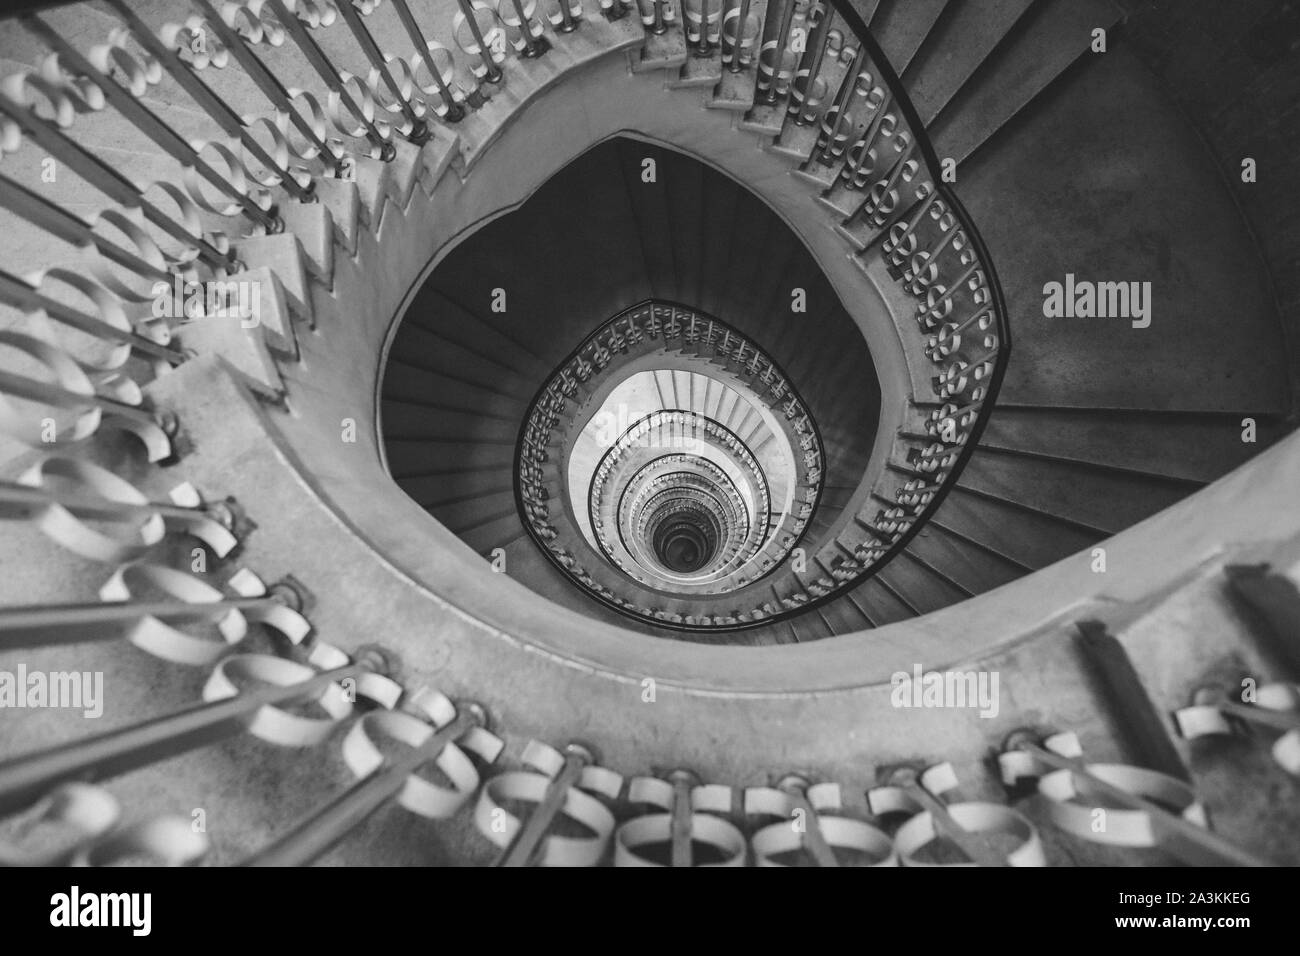 Very deep descending spiral staircase Stock Photo